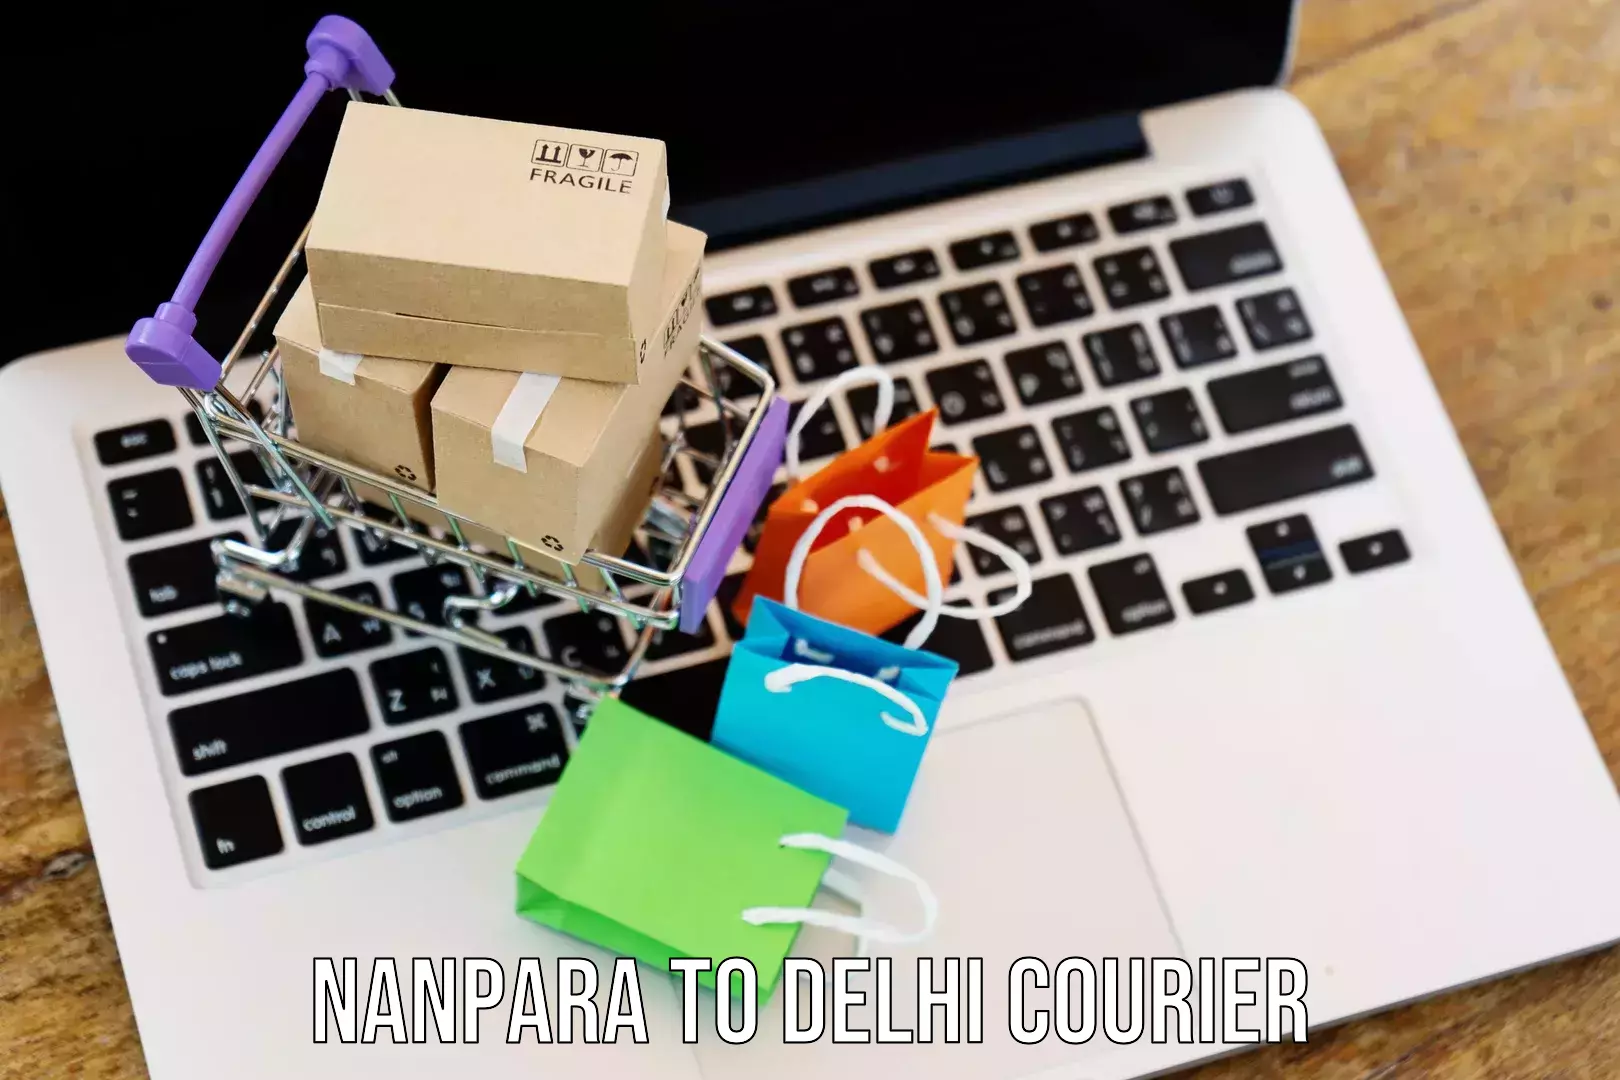 International shipping rates Nanpara to Jamia Millia Islamia New Delhi